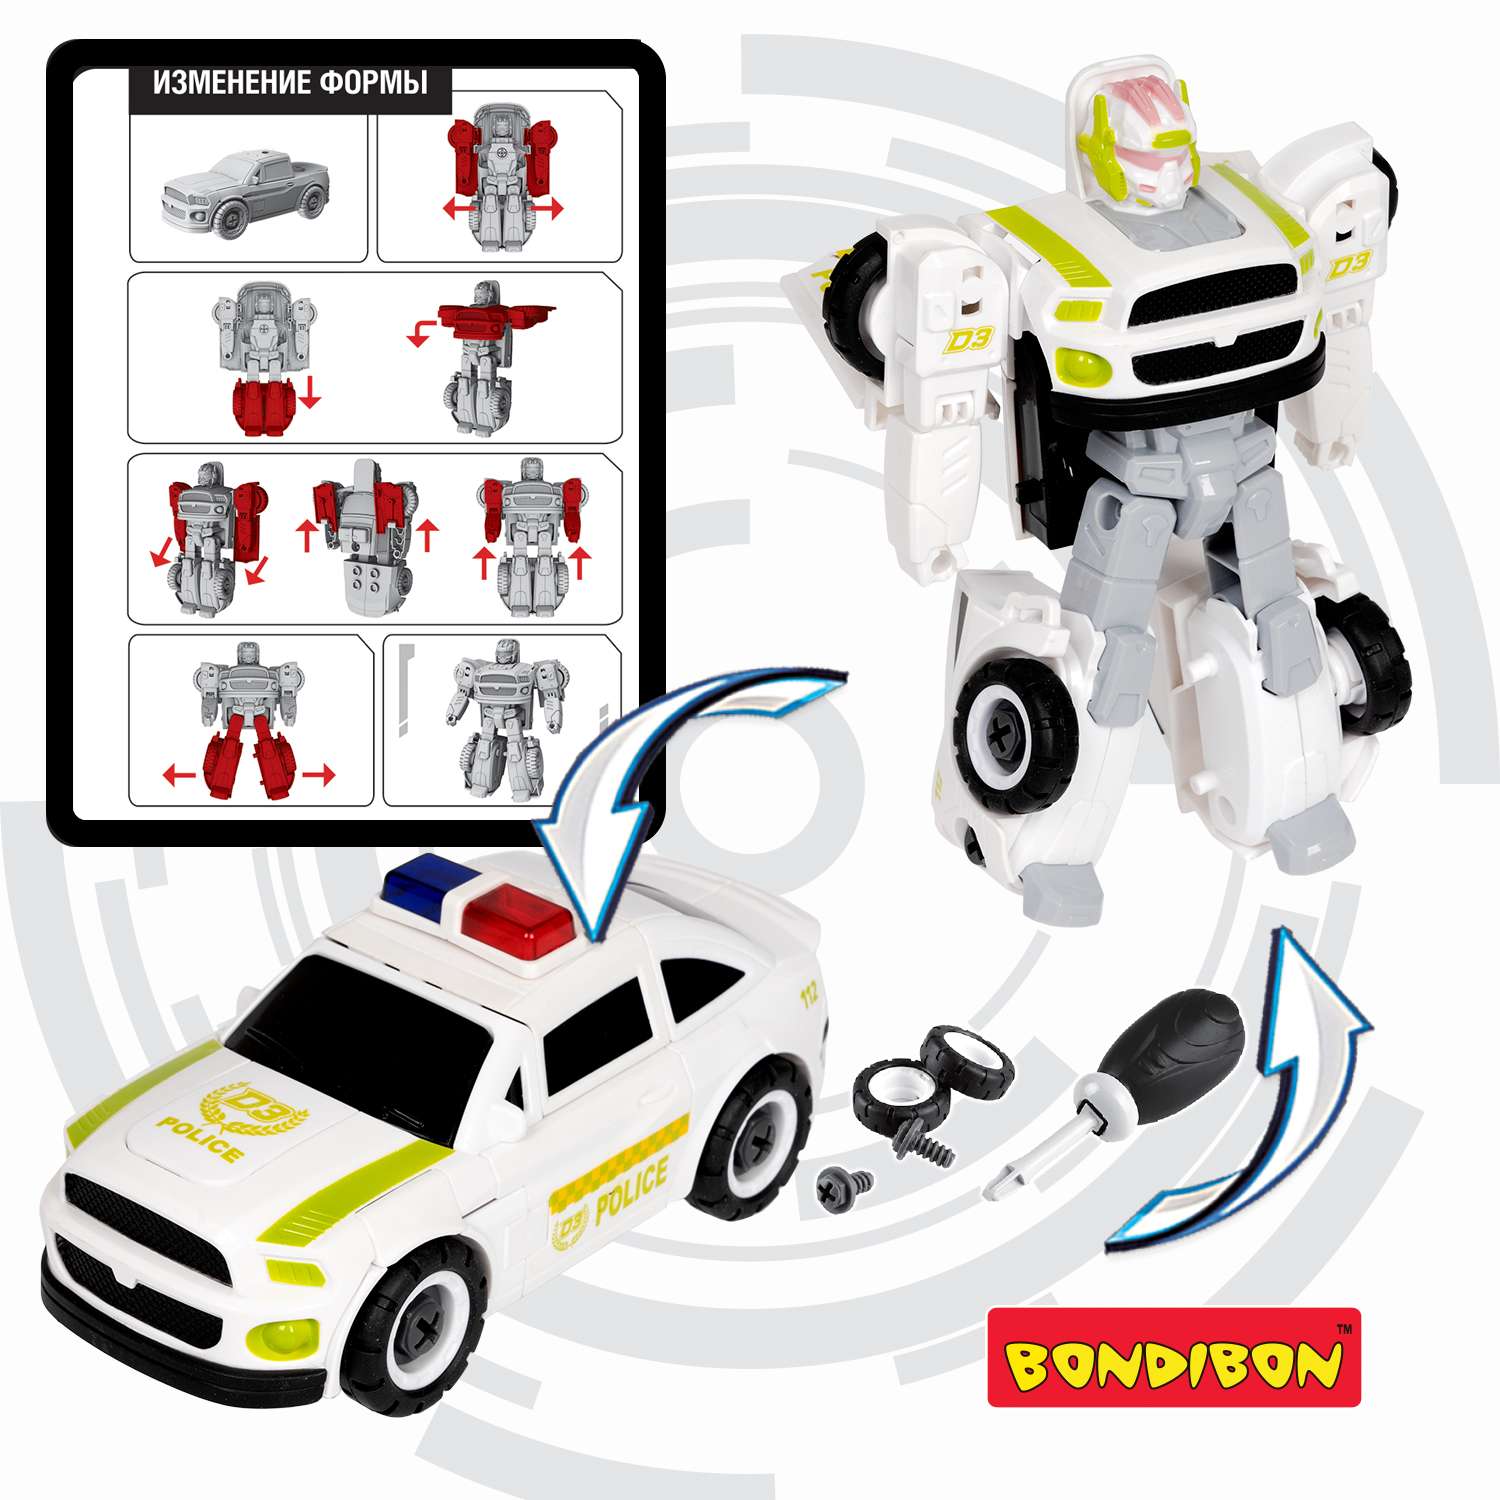 Трансформер BONDIBON Bondibot Робот-автомобиль 2 в 1 с отвёрткой Полиция белого цвета - фото 6